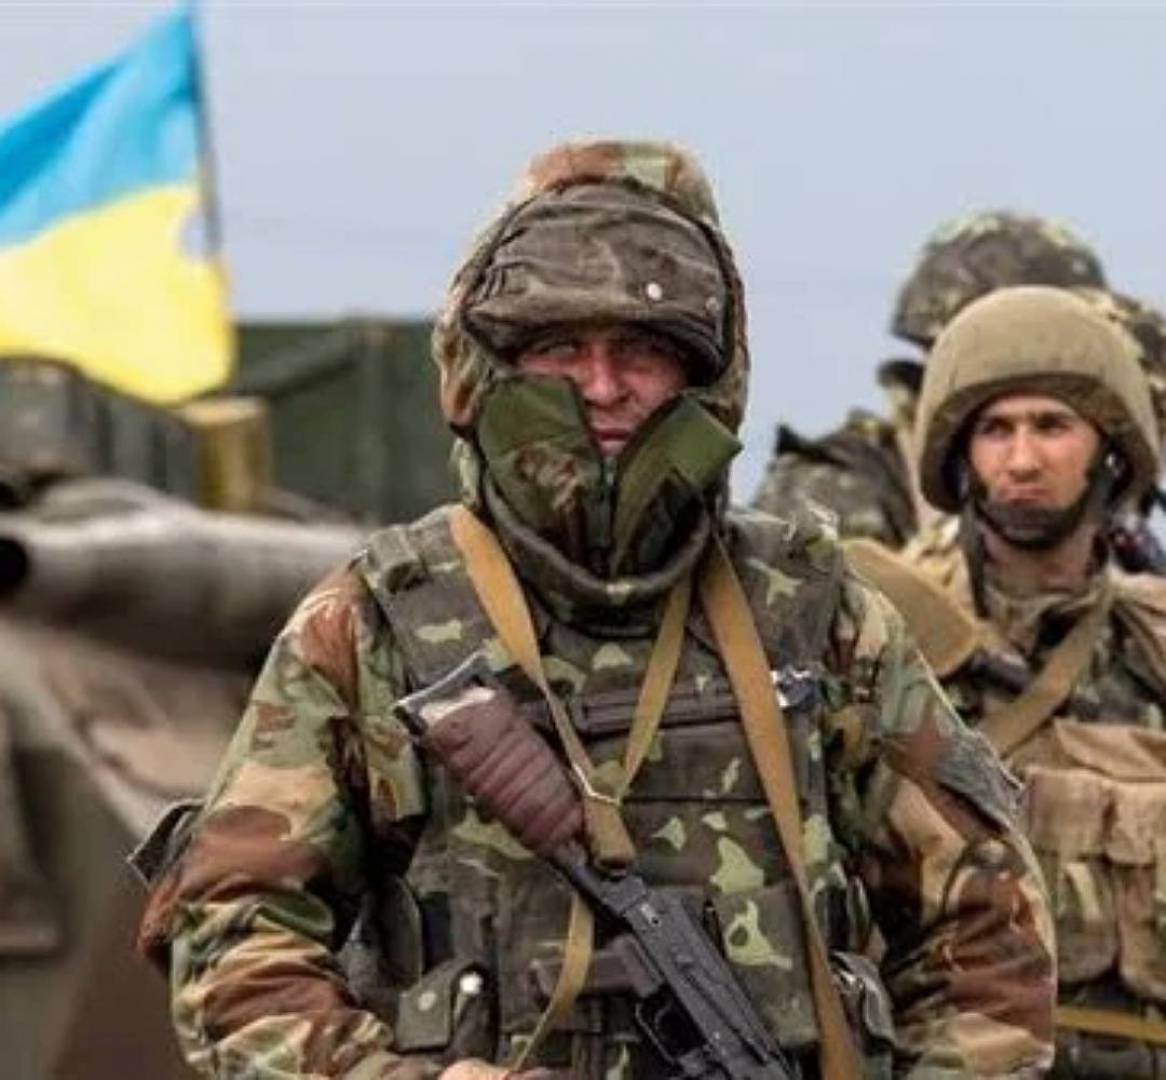 عكس ما يسوقونه..خسائر عسكرية فادحة لأوكرانيا ...هذا ما كشفه جون بولتون